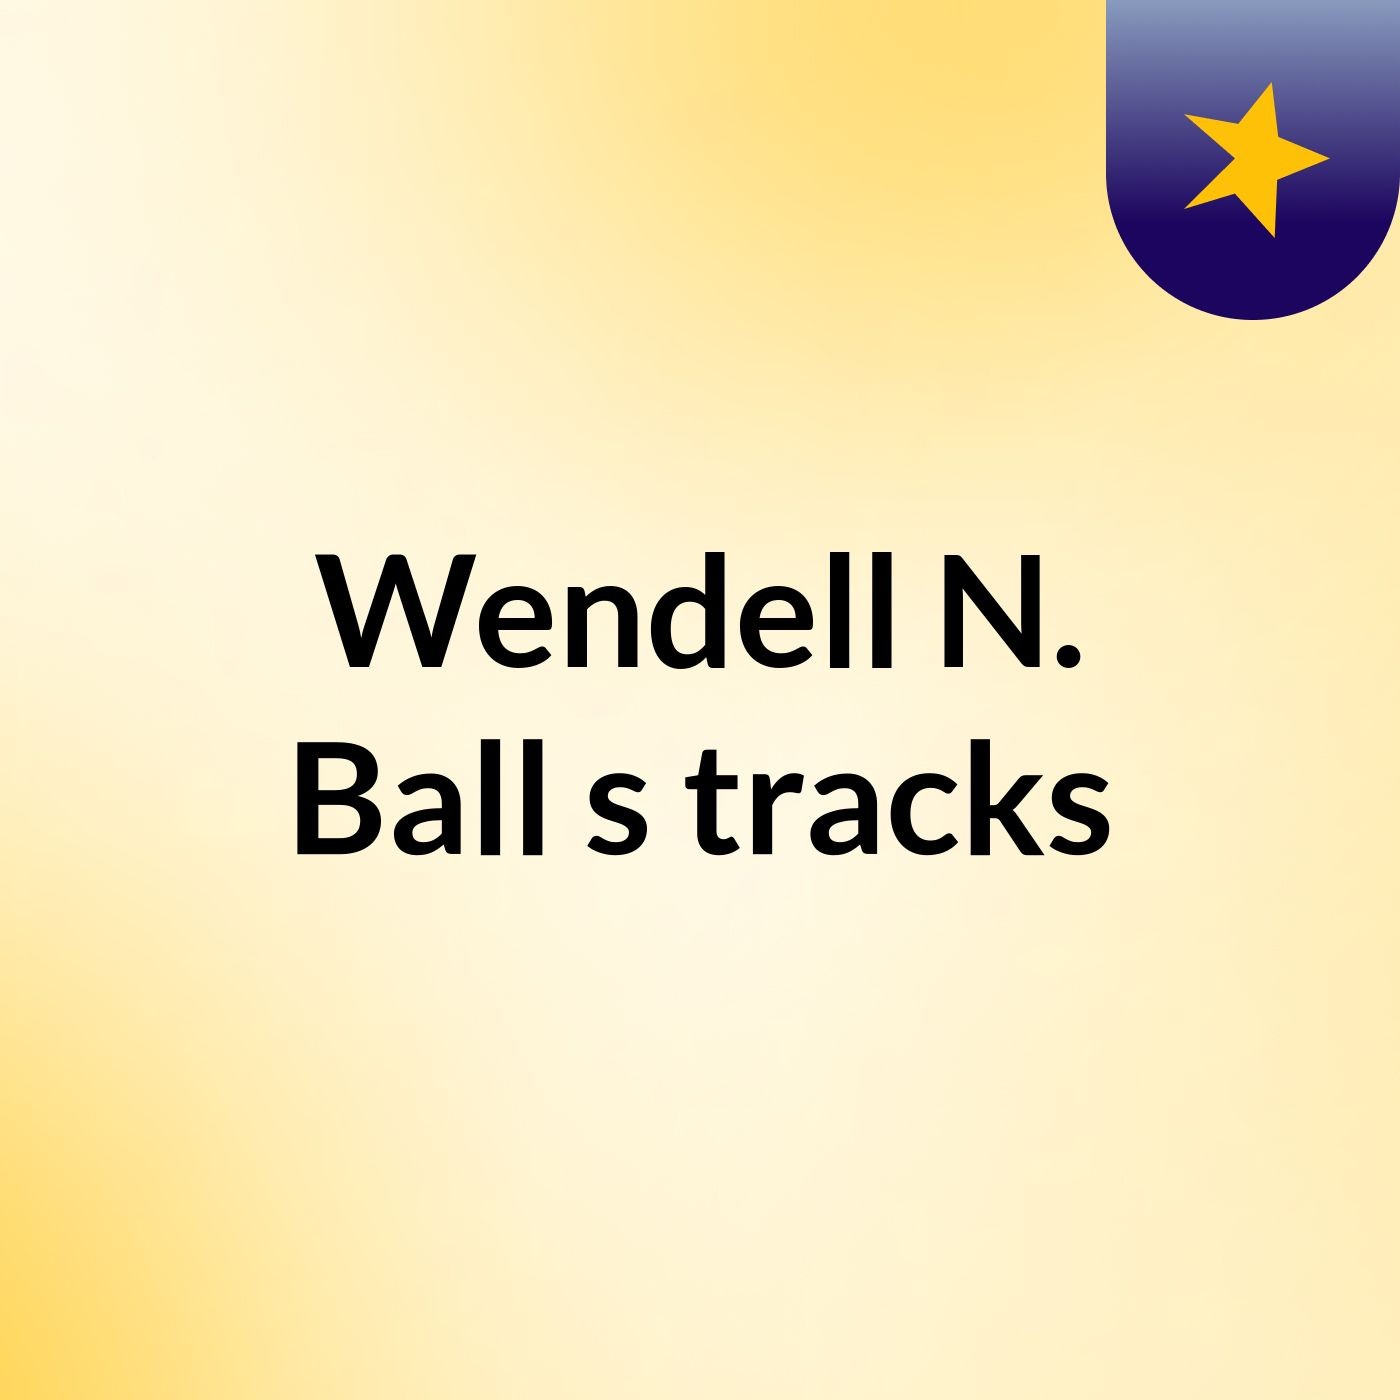 Wendell N. Ball's tracks